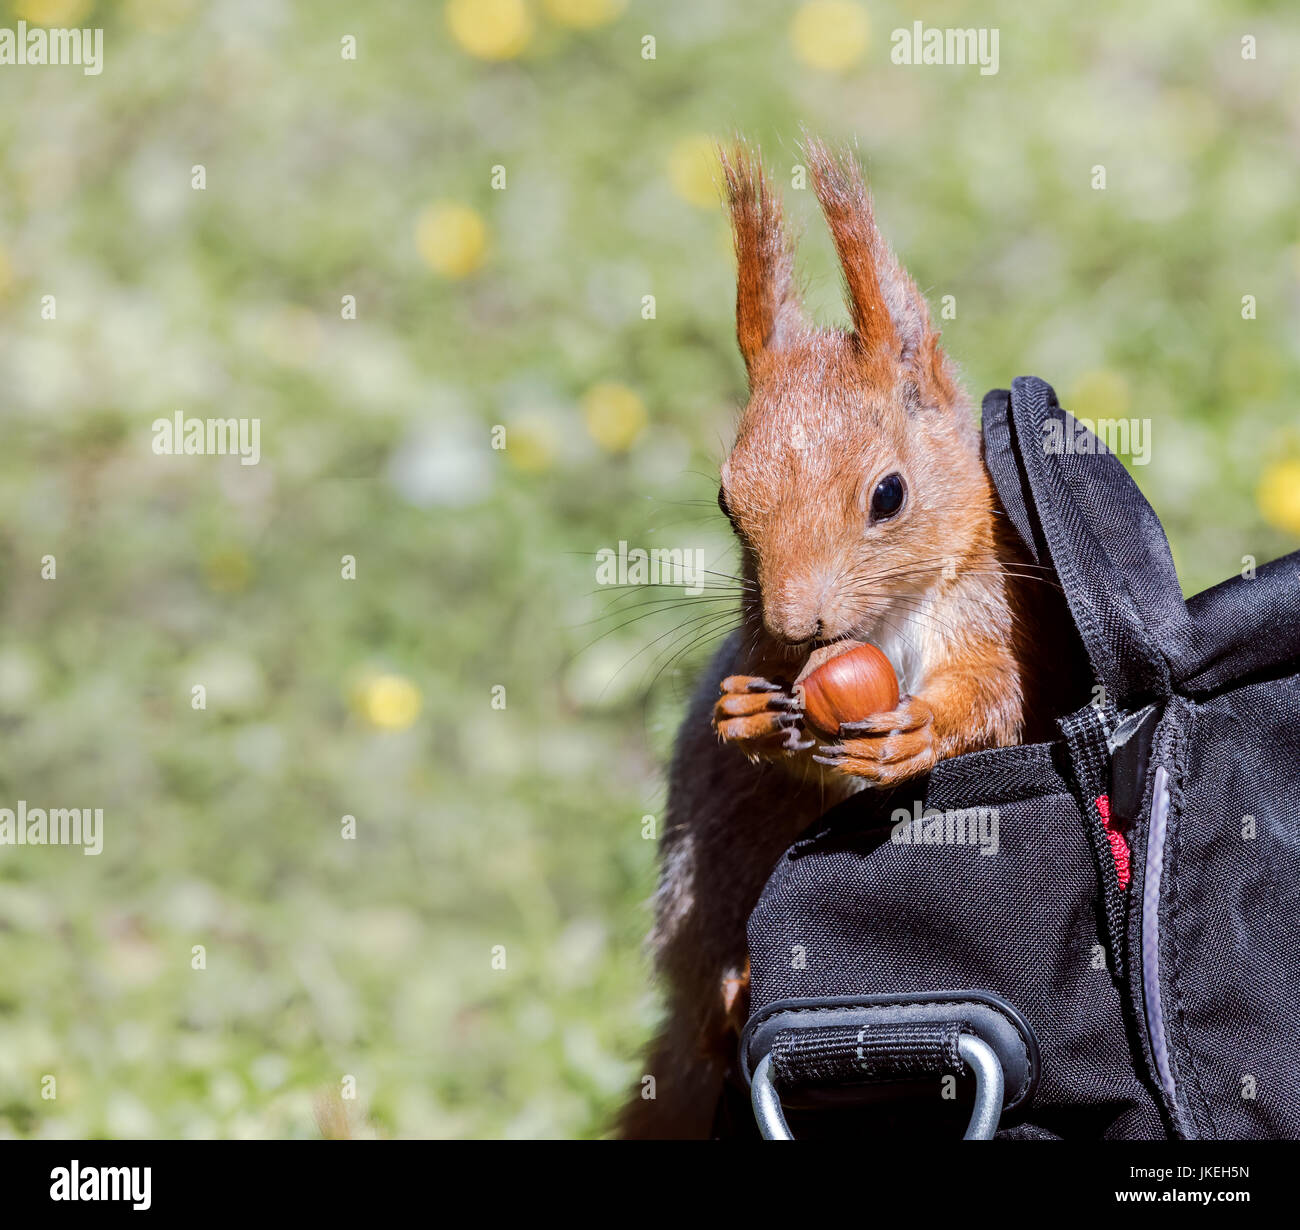 Funny scoiattolo rosso si trova in park visitatore borsa con un dado rubati closeup Foto Stock